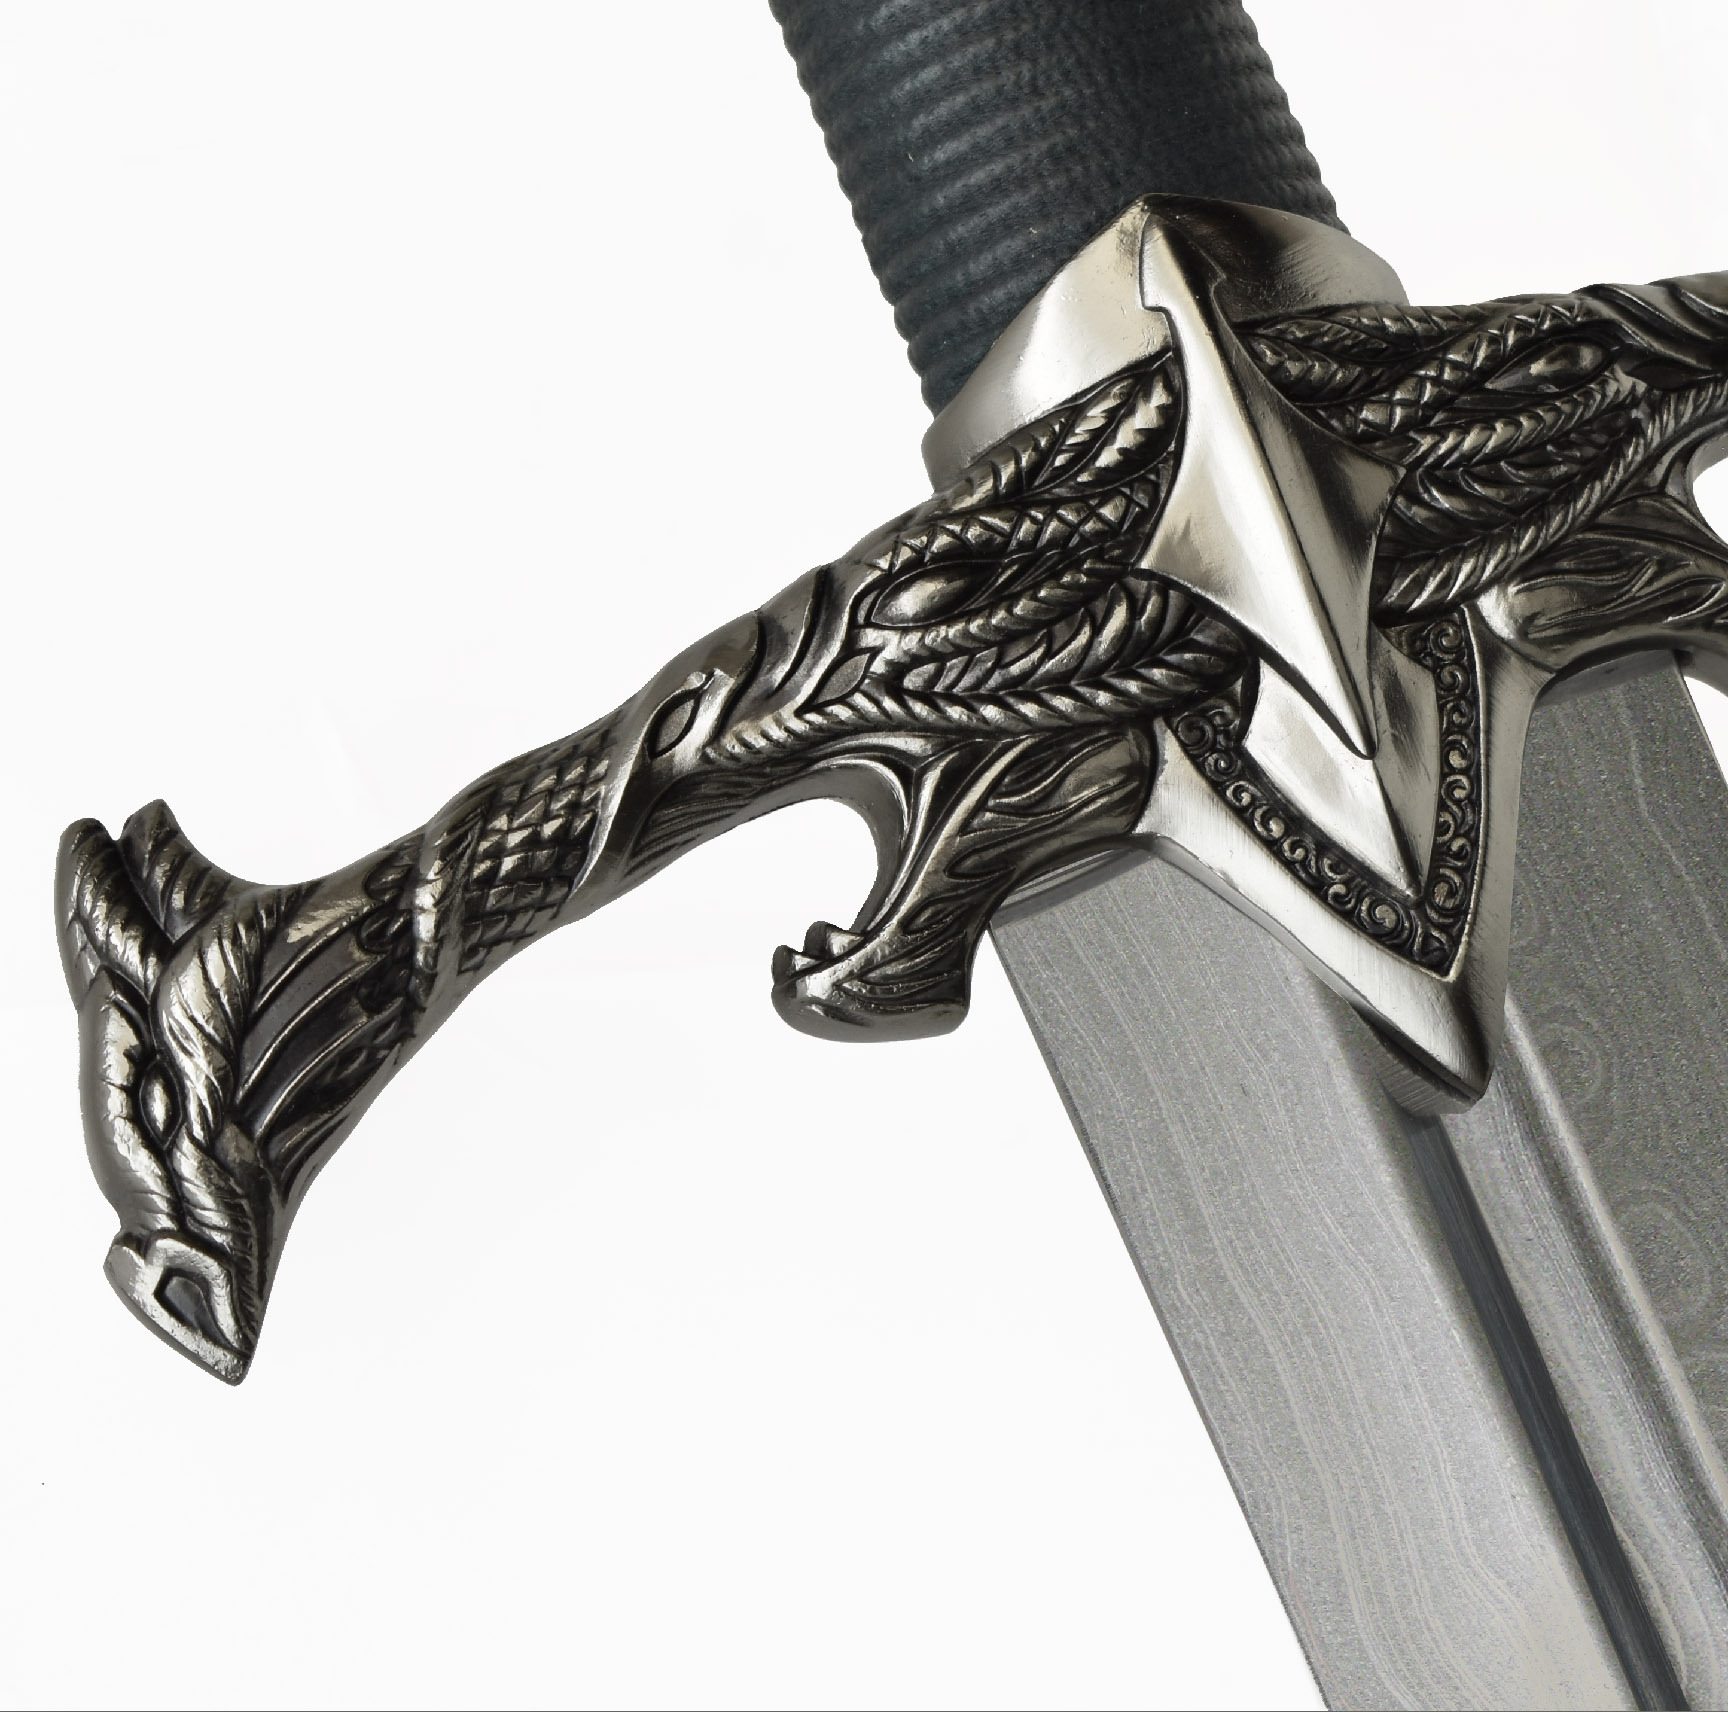 Game of Thrones - Blackfyre Schwert, Damast Edition